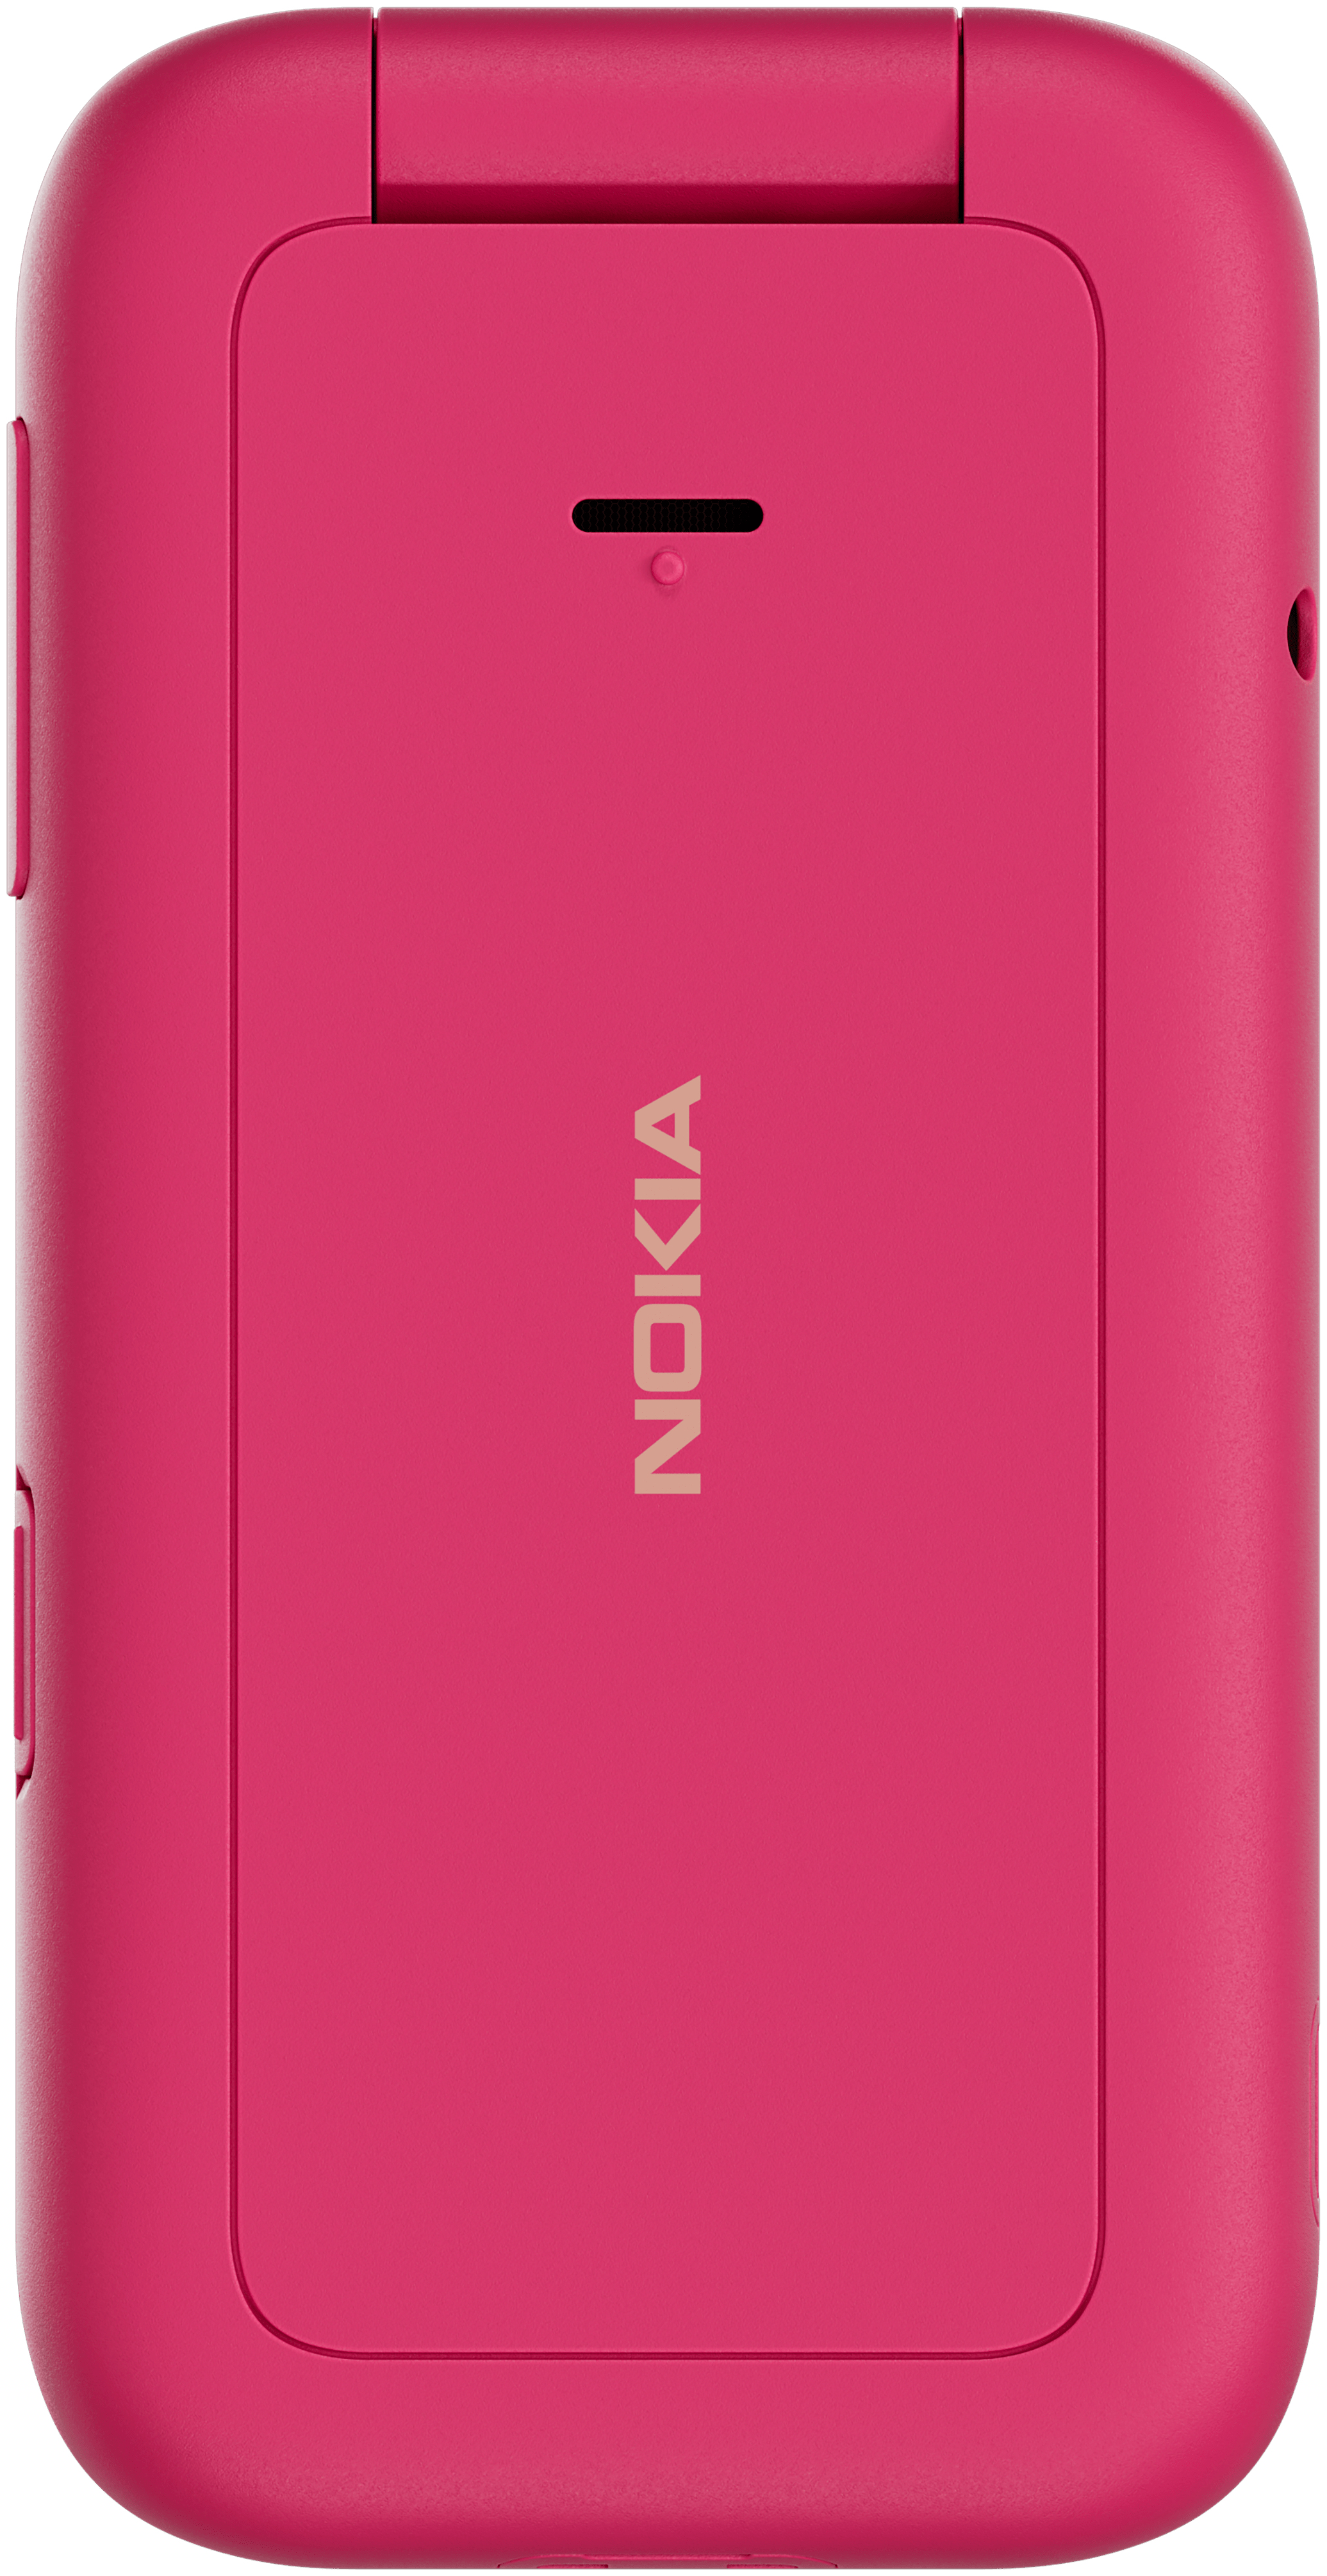 Nokia 2660 Flip Smartphone Dual Sim (Pink) von expert Technomarkt